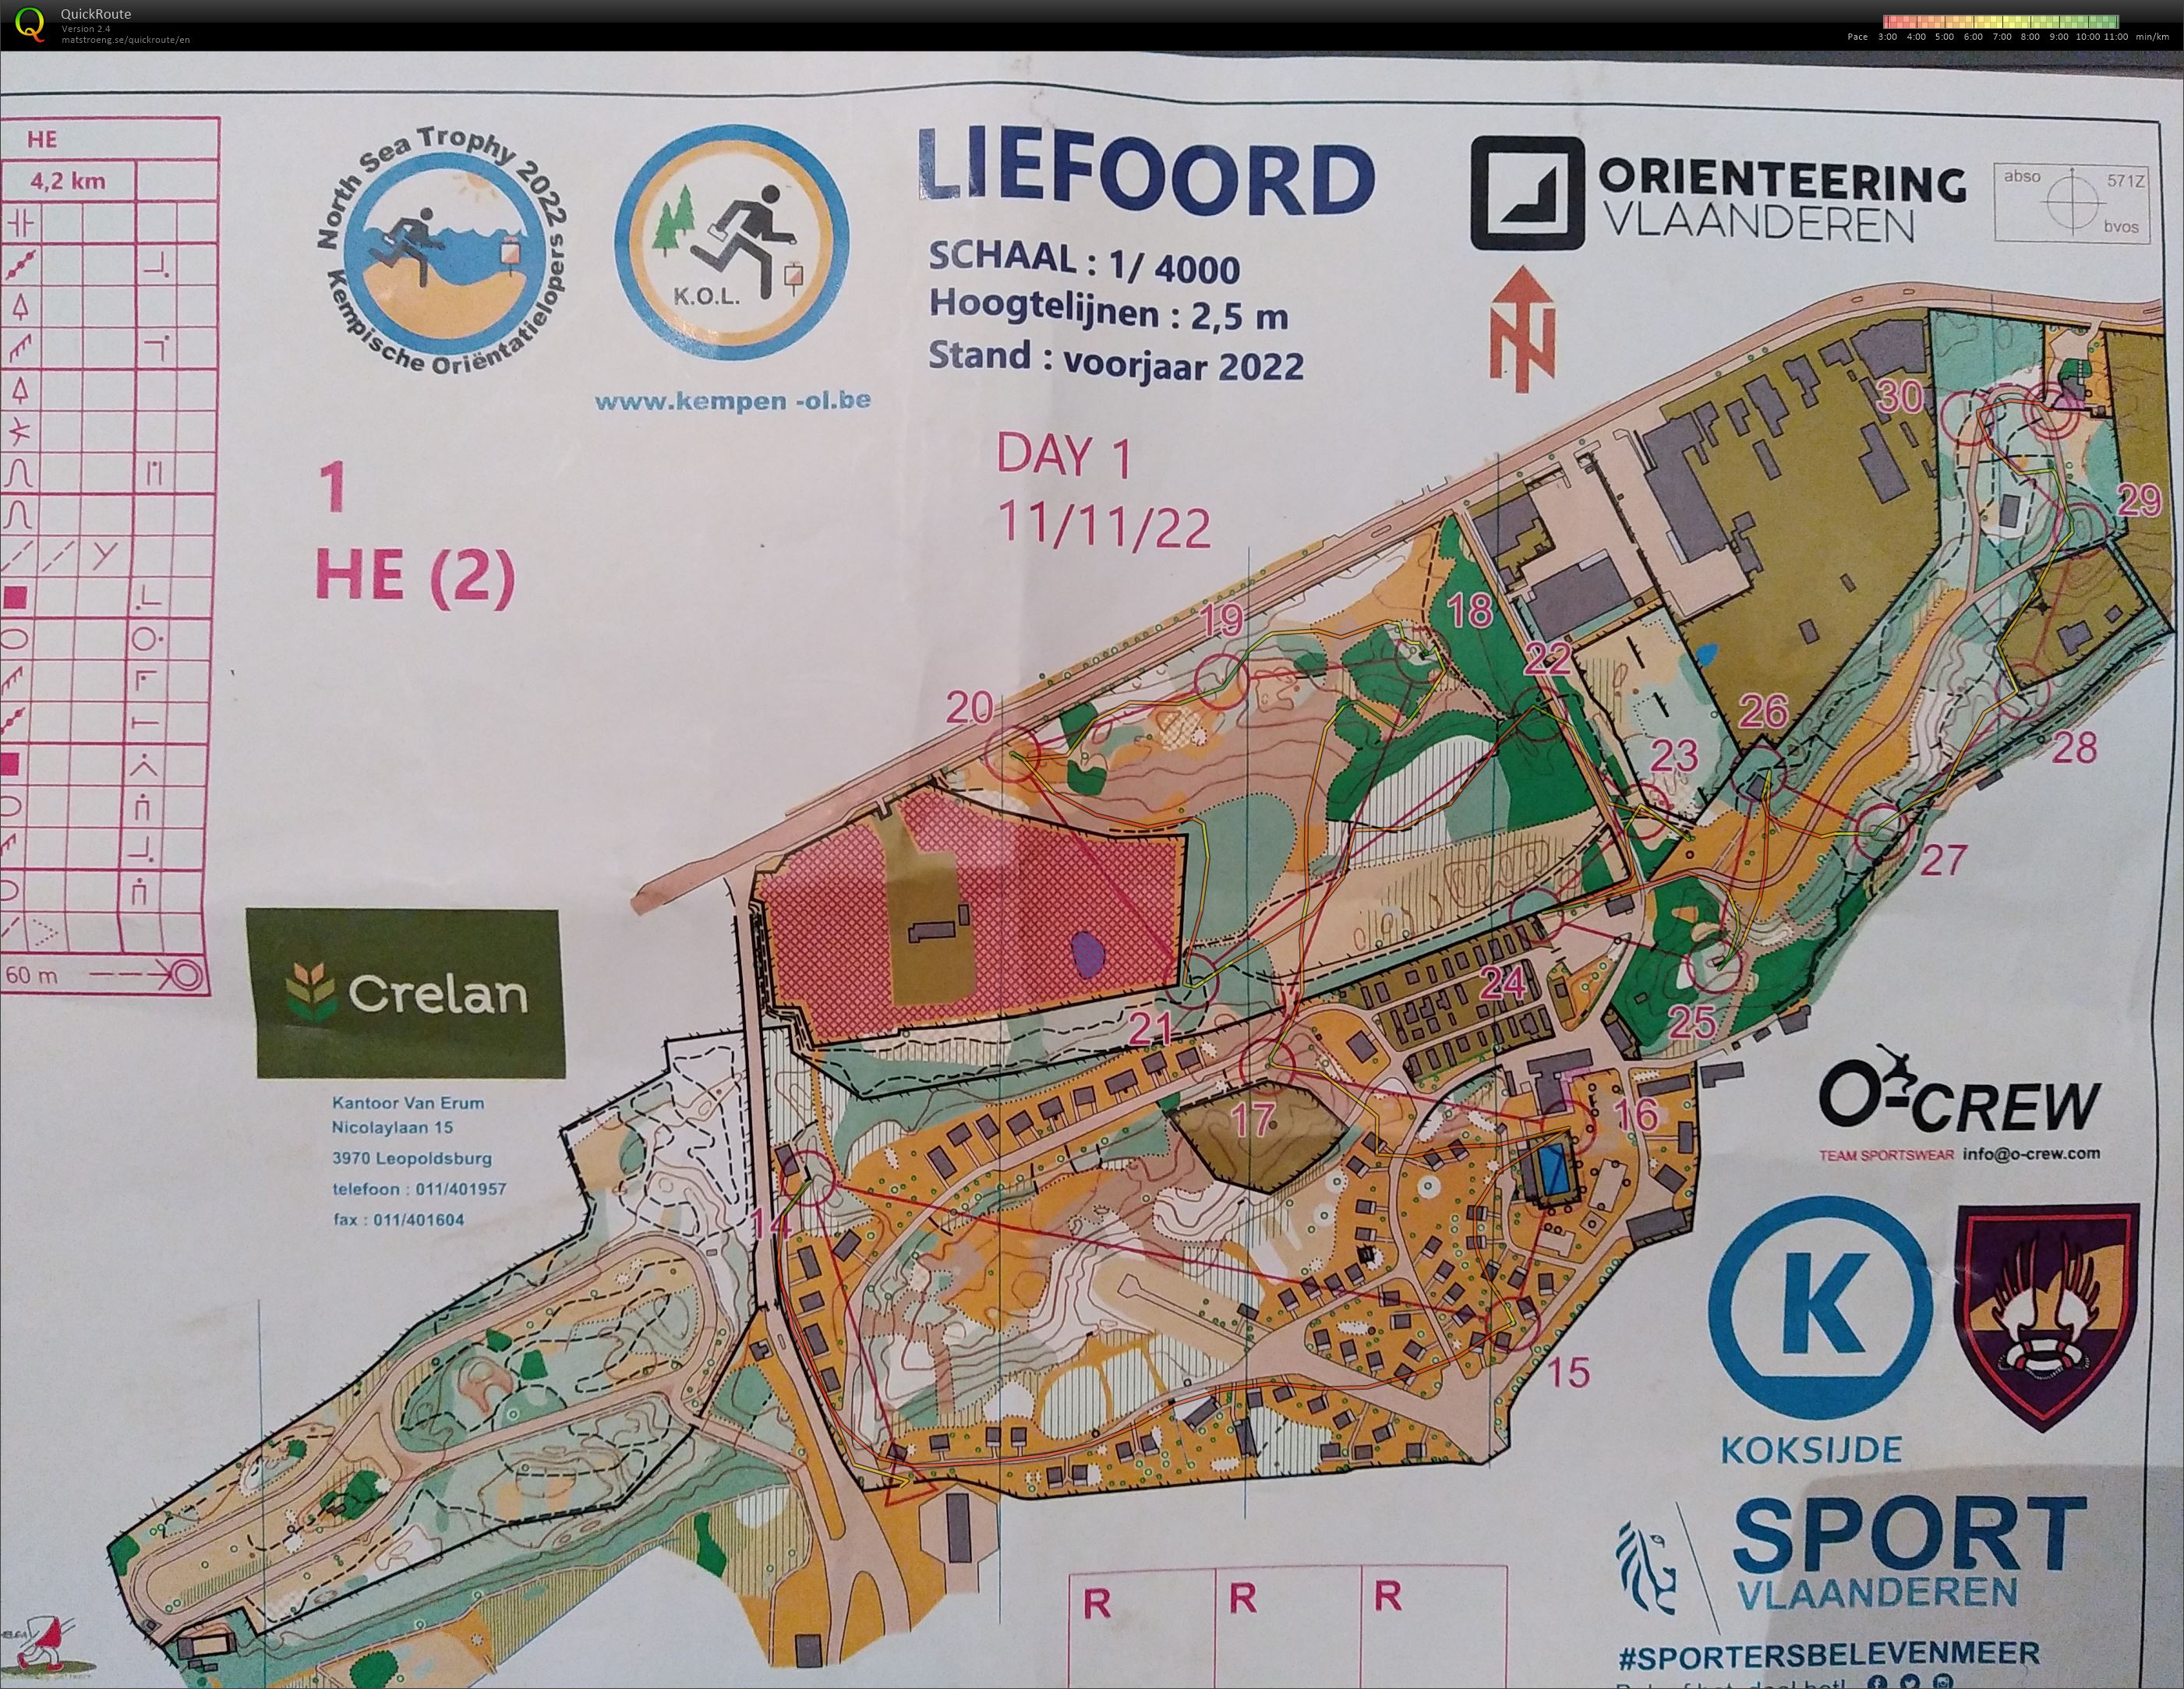 Liefoord deel 2, north sea trophy dag 1, Koksijde (11/11/2022)